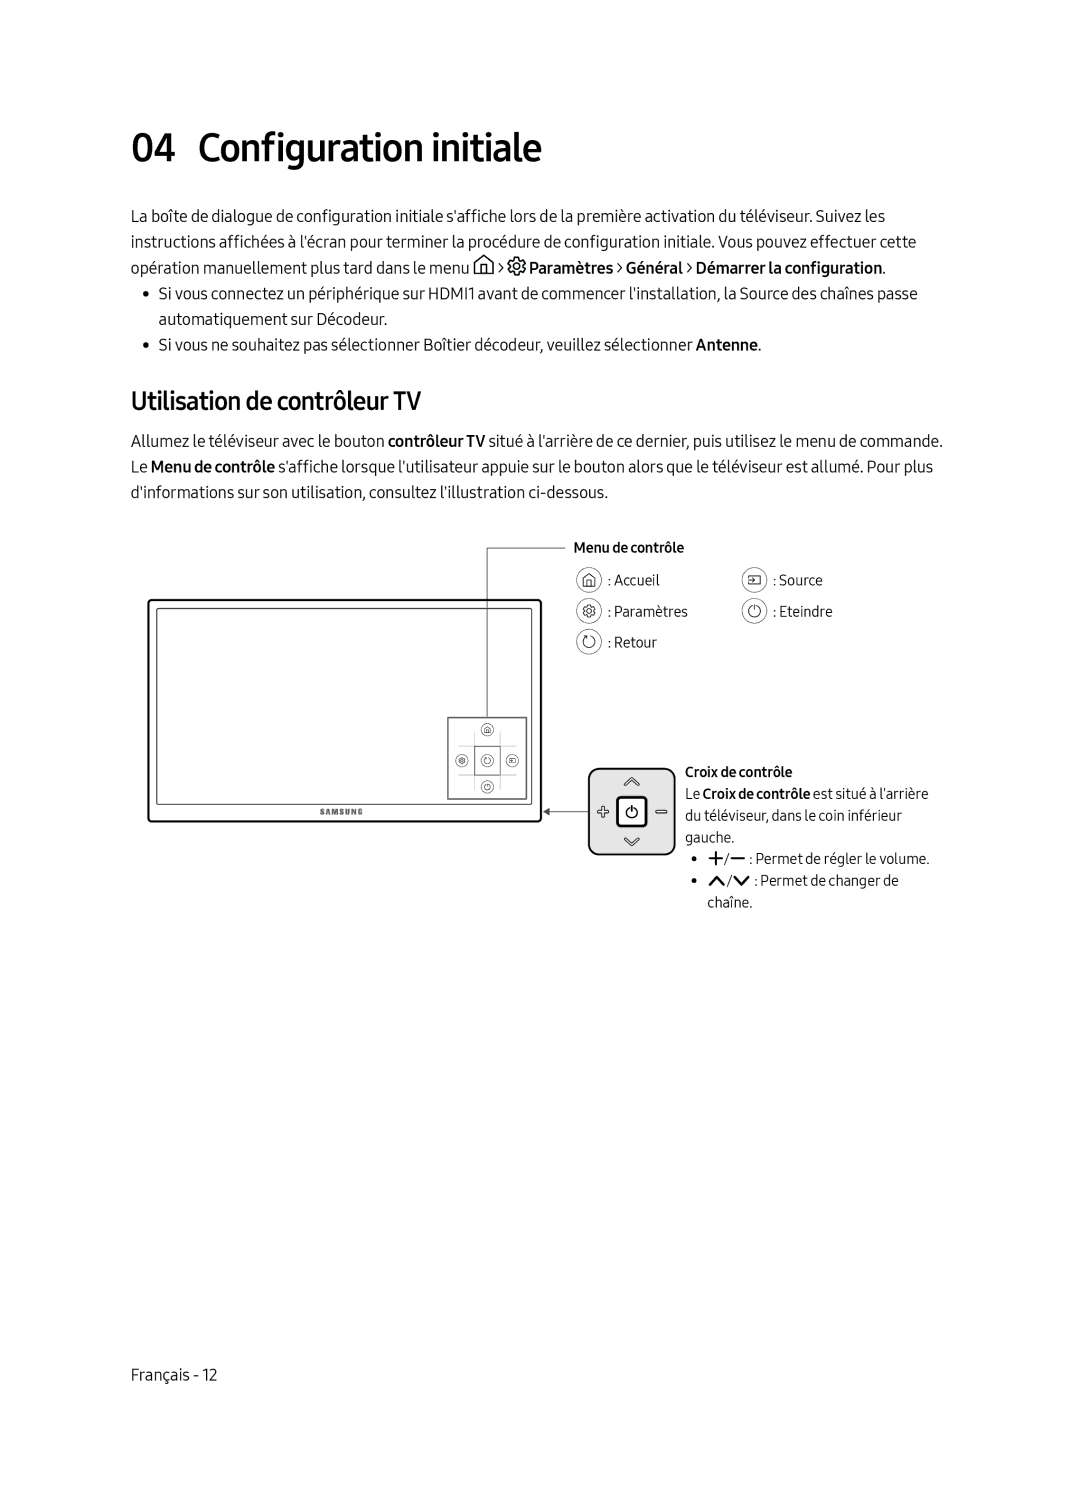 Samsung UE55MU6220WXXN manual Configuration initiale, Utilisation de contrôleur TV 